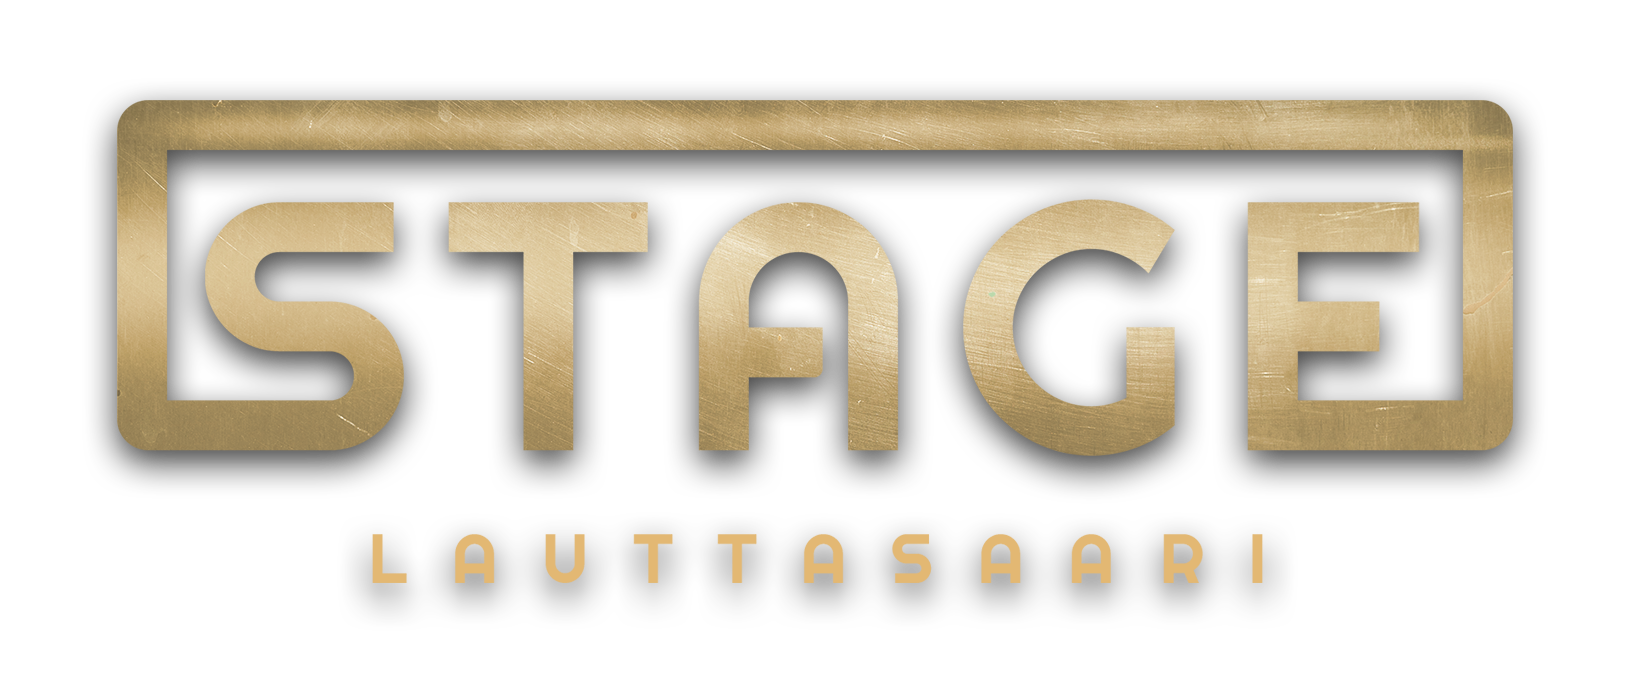 Stage Lauttasaari